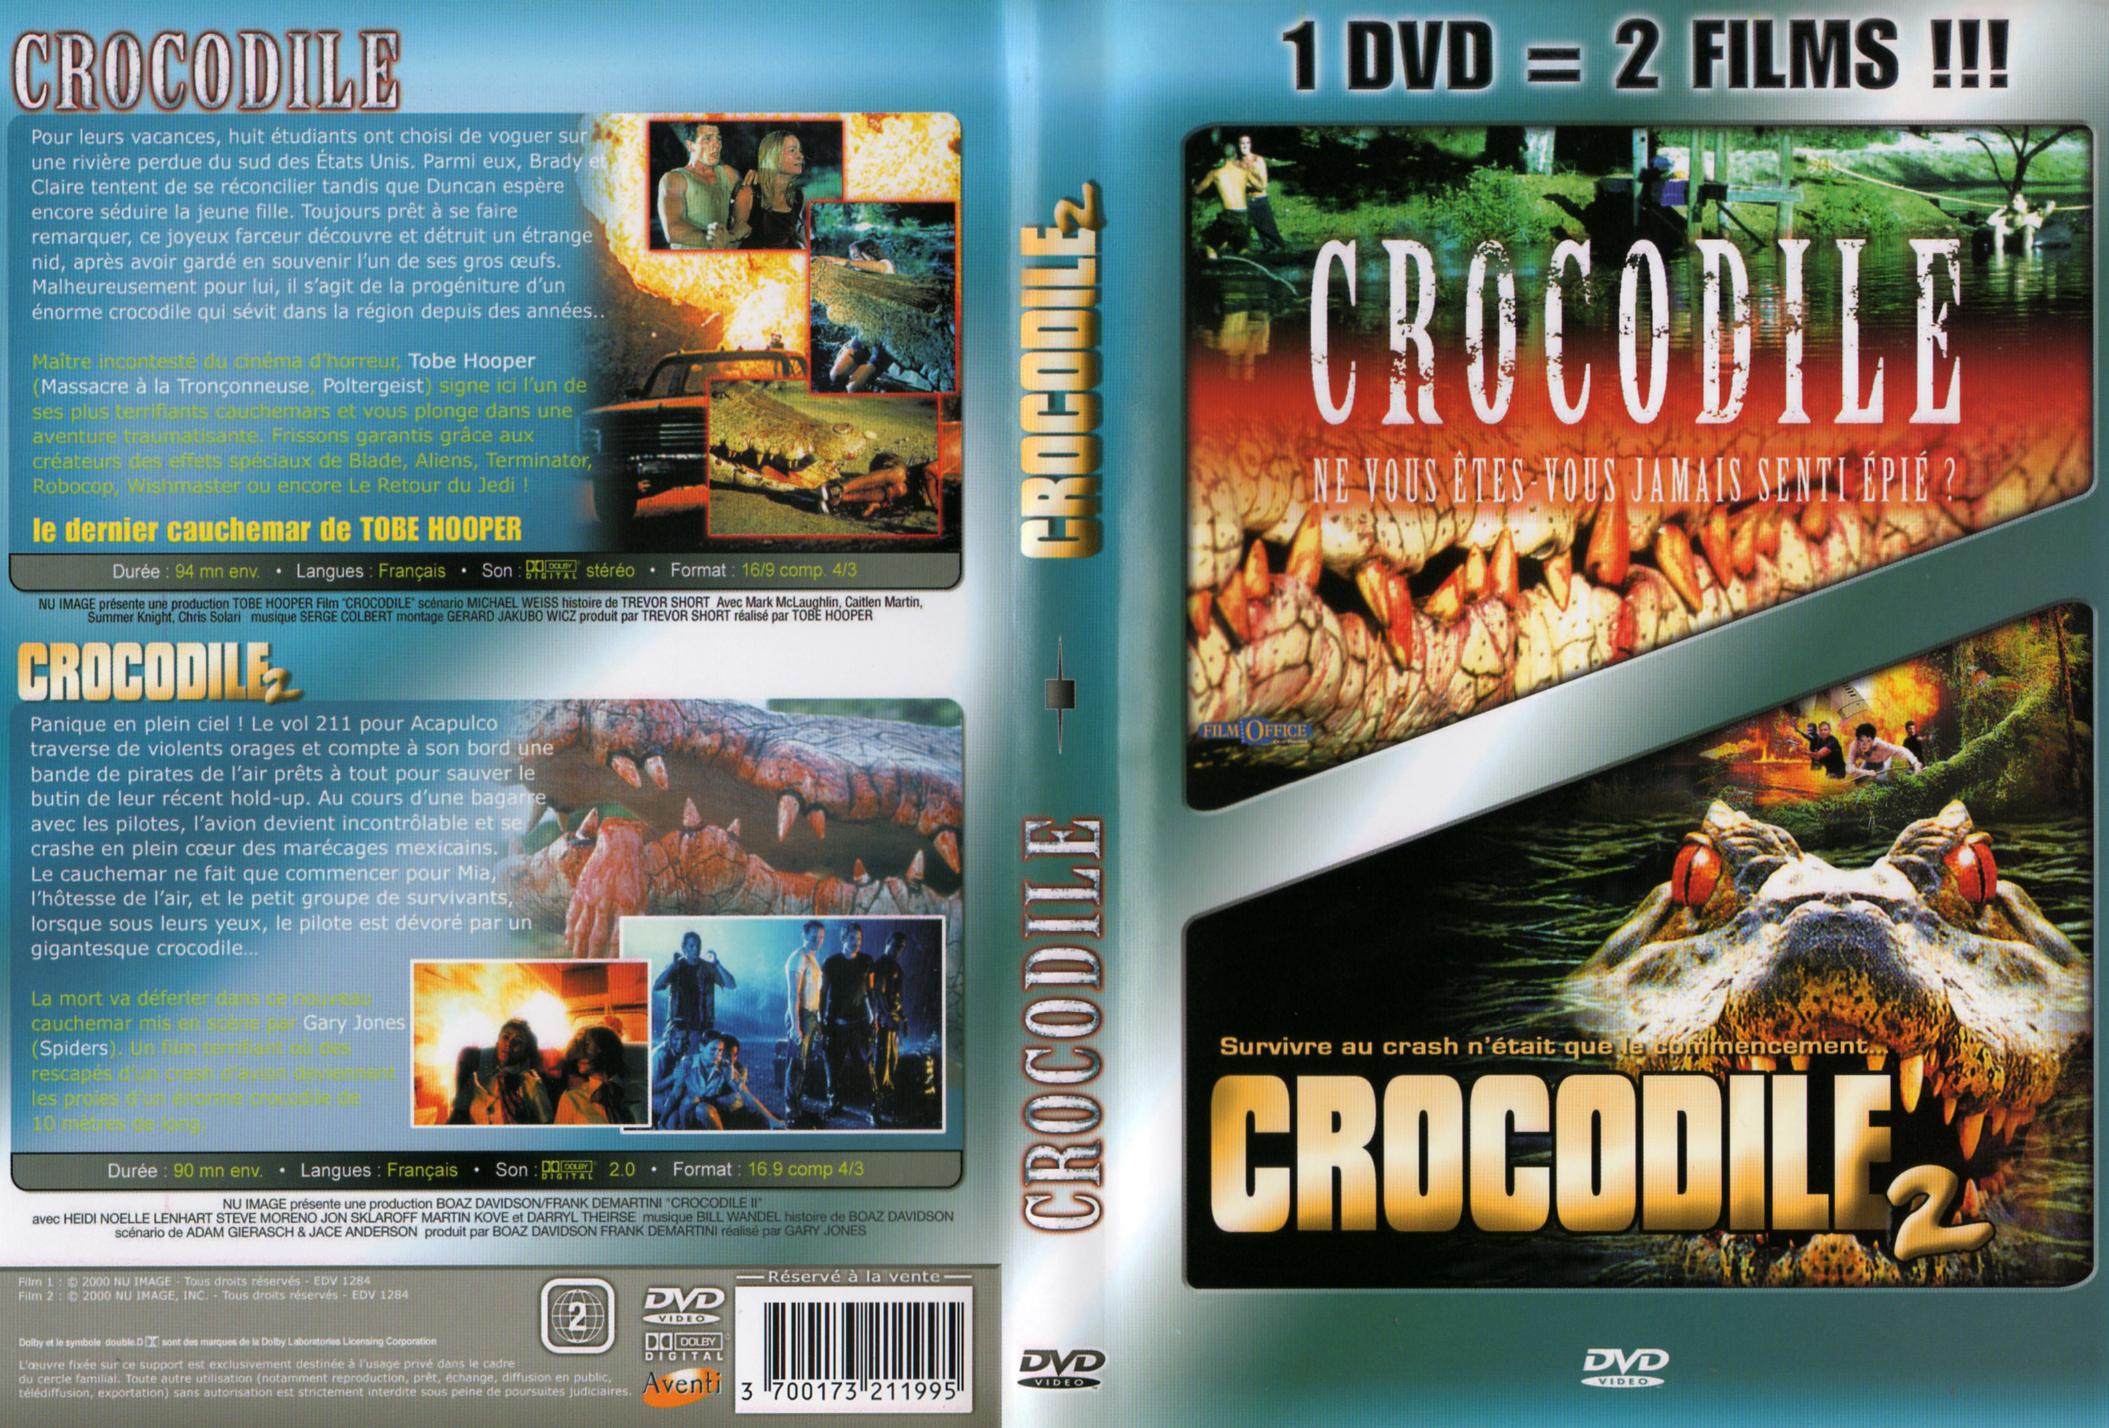 Jaquette DVD Crocodile + Crocodile 2